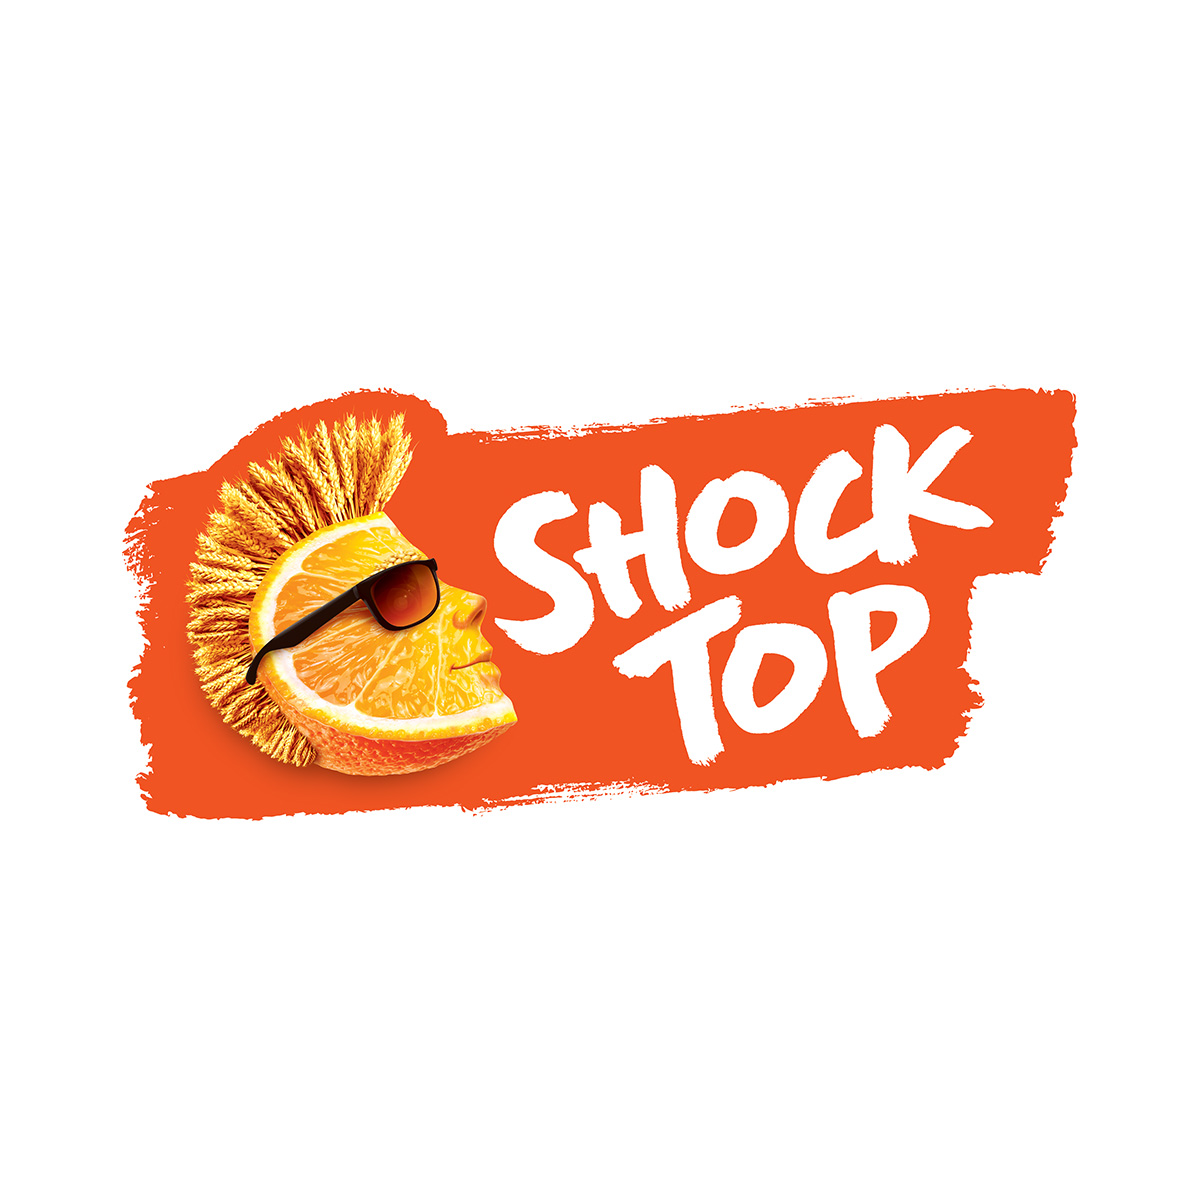 Shock Top